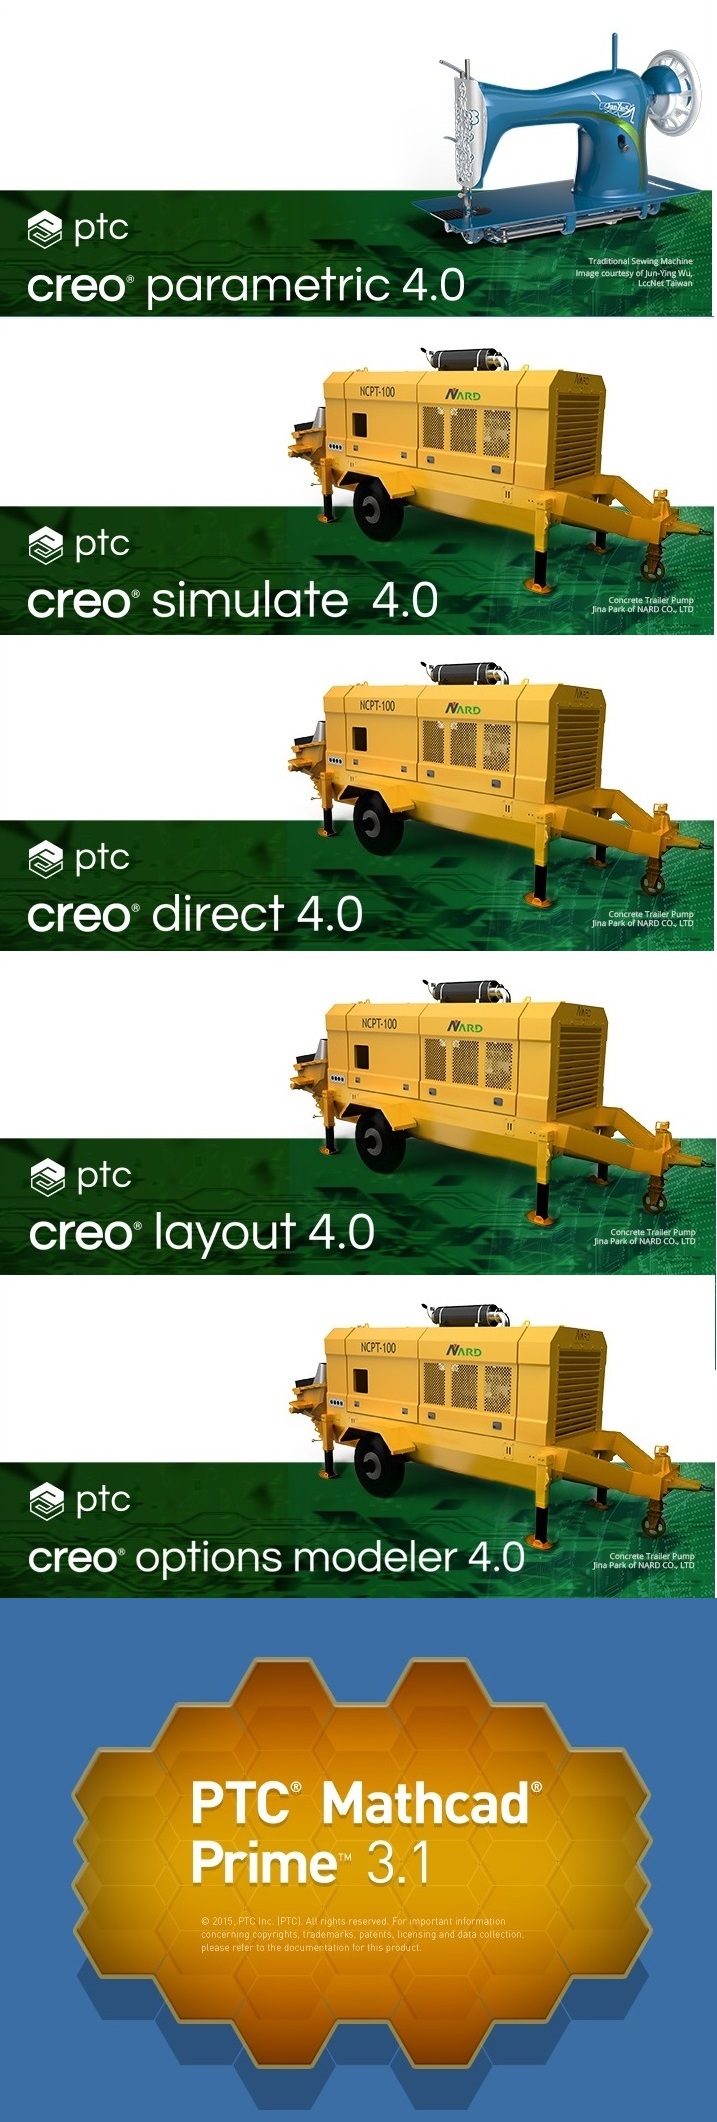 PTC Creo 4.0 F000 full software